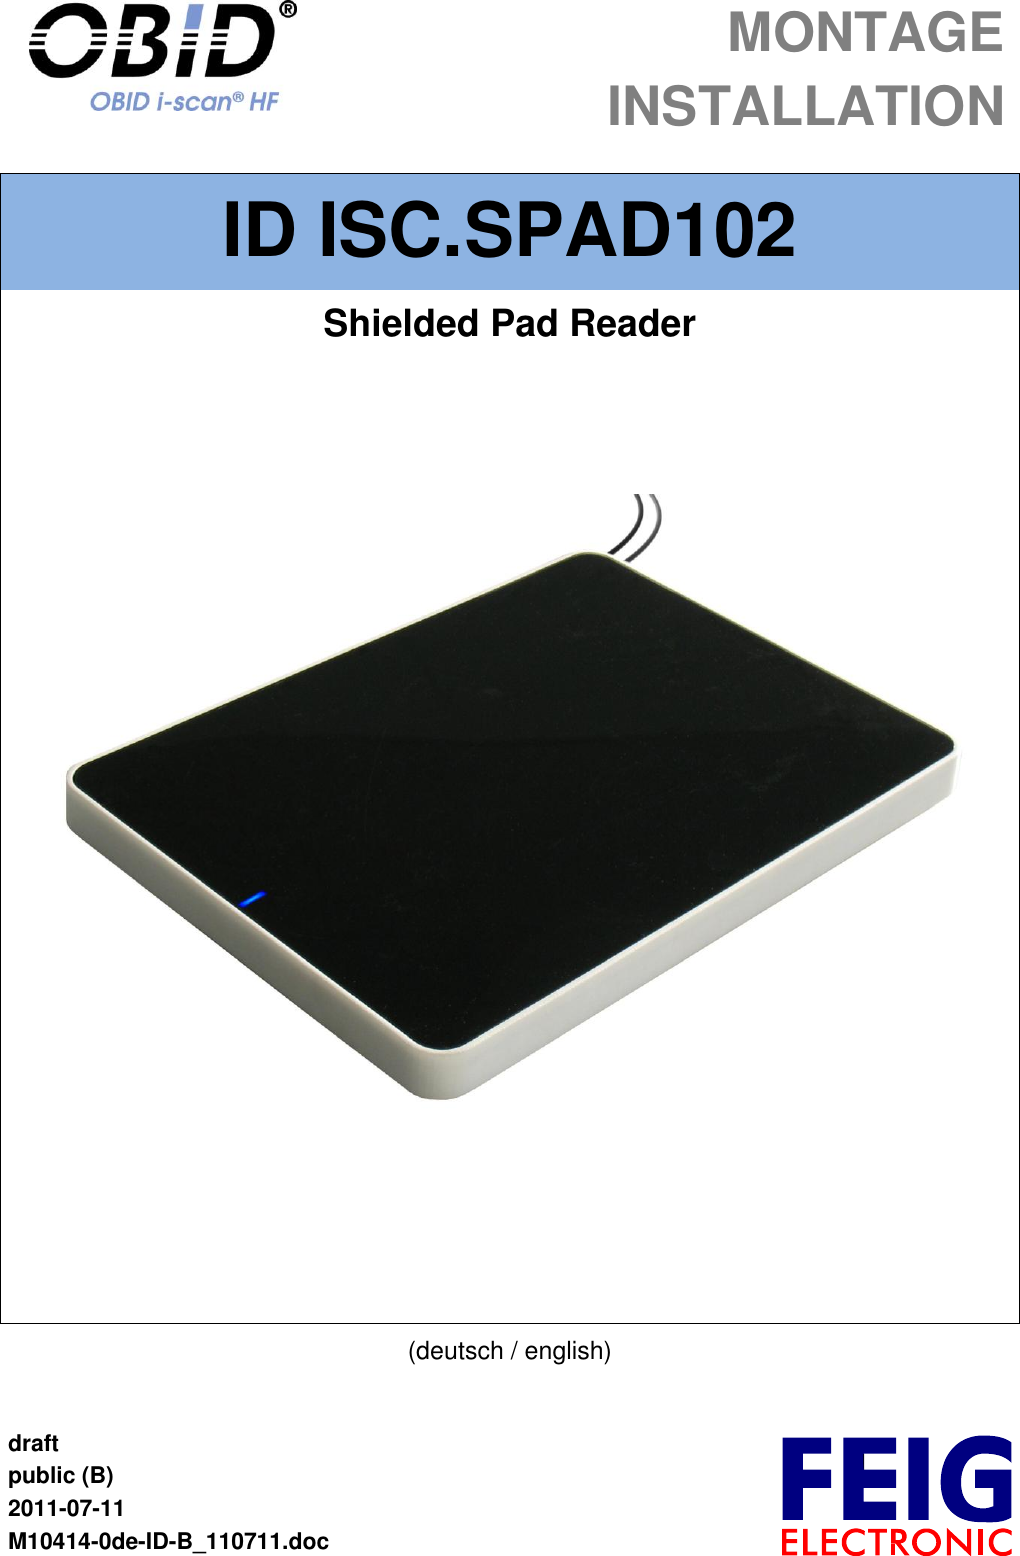  MONTAGE  INSTALLATION  draft public (B) 2011-07-11 M10414-0de-ID-B_110711.doc  ID ISC.SPAD102 Shielded Pad Reader     (deutsch / english) 